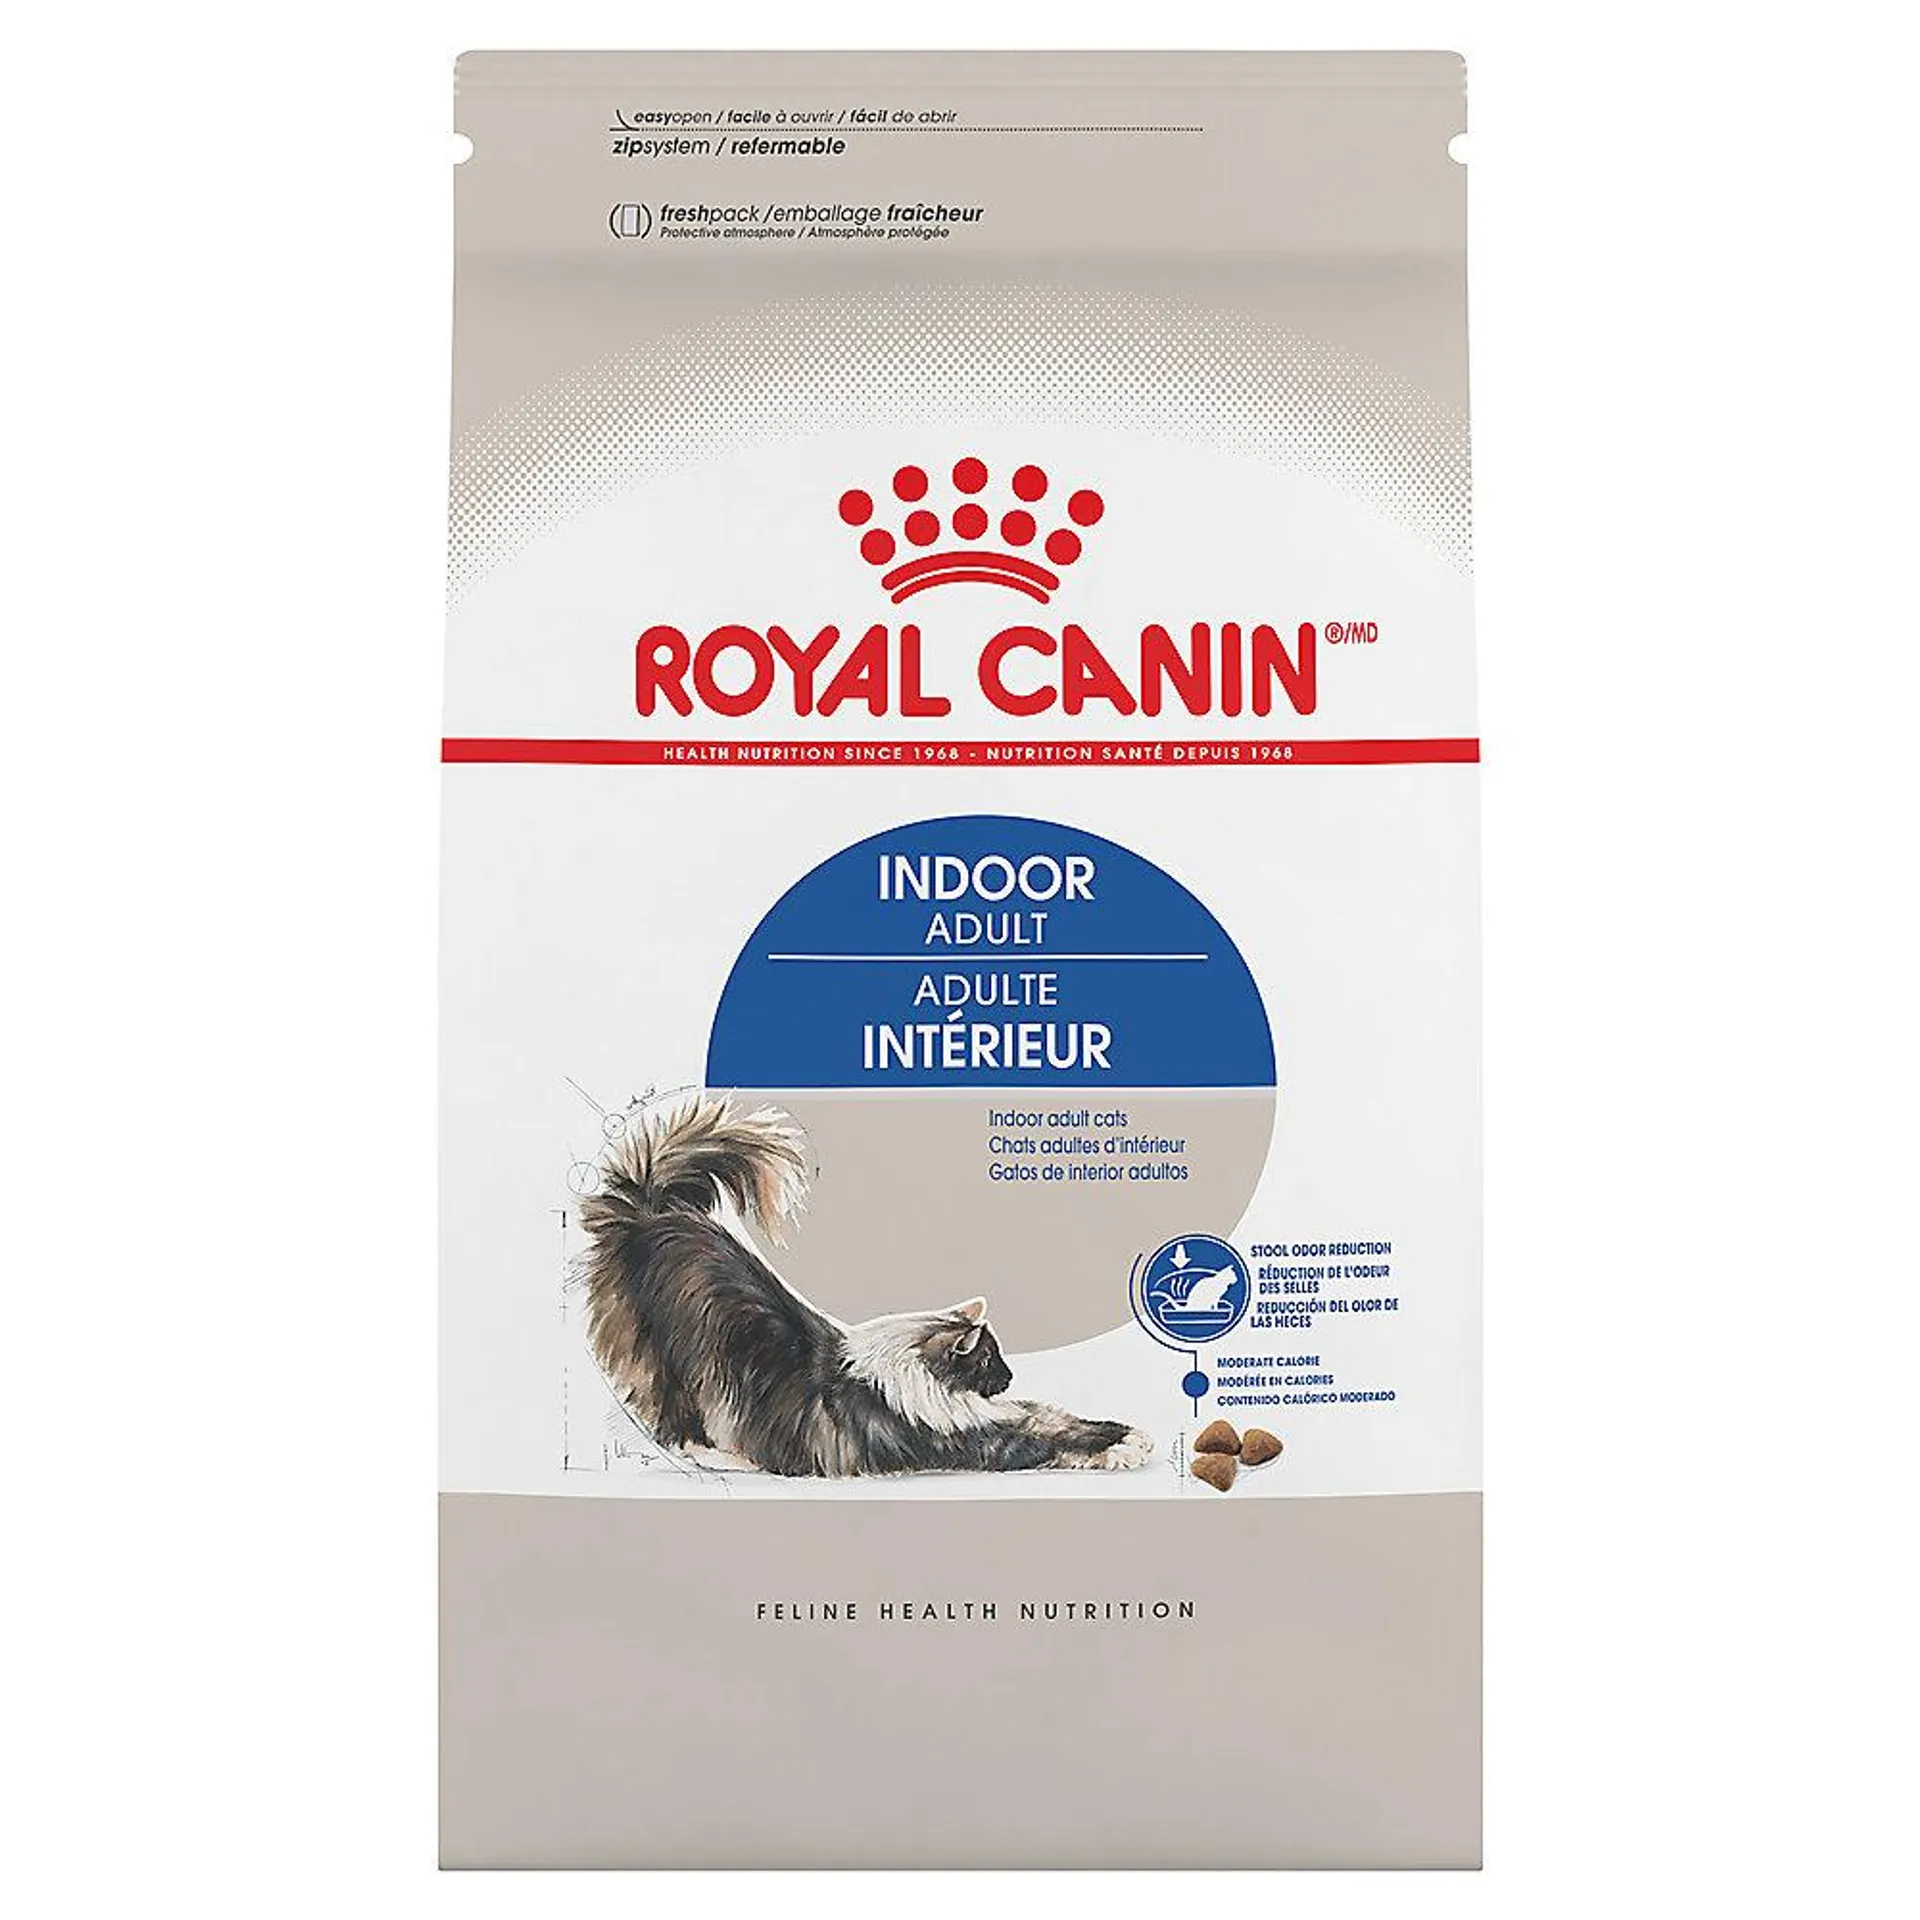 Royal Canin® Feline Health Nutrition Indoor Adult Dry Cat Food